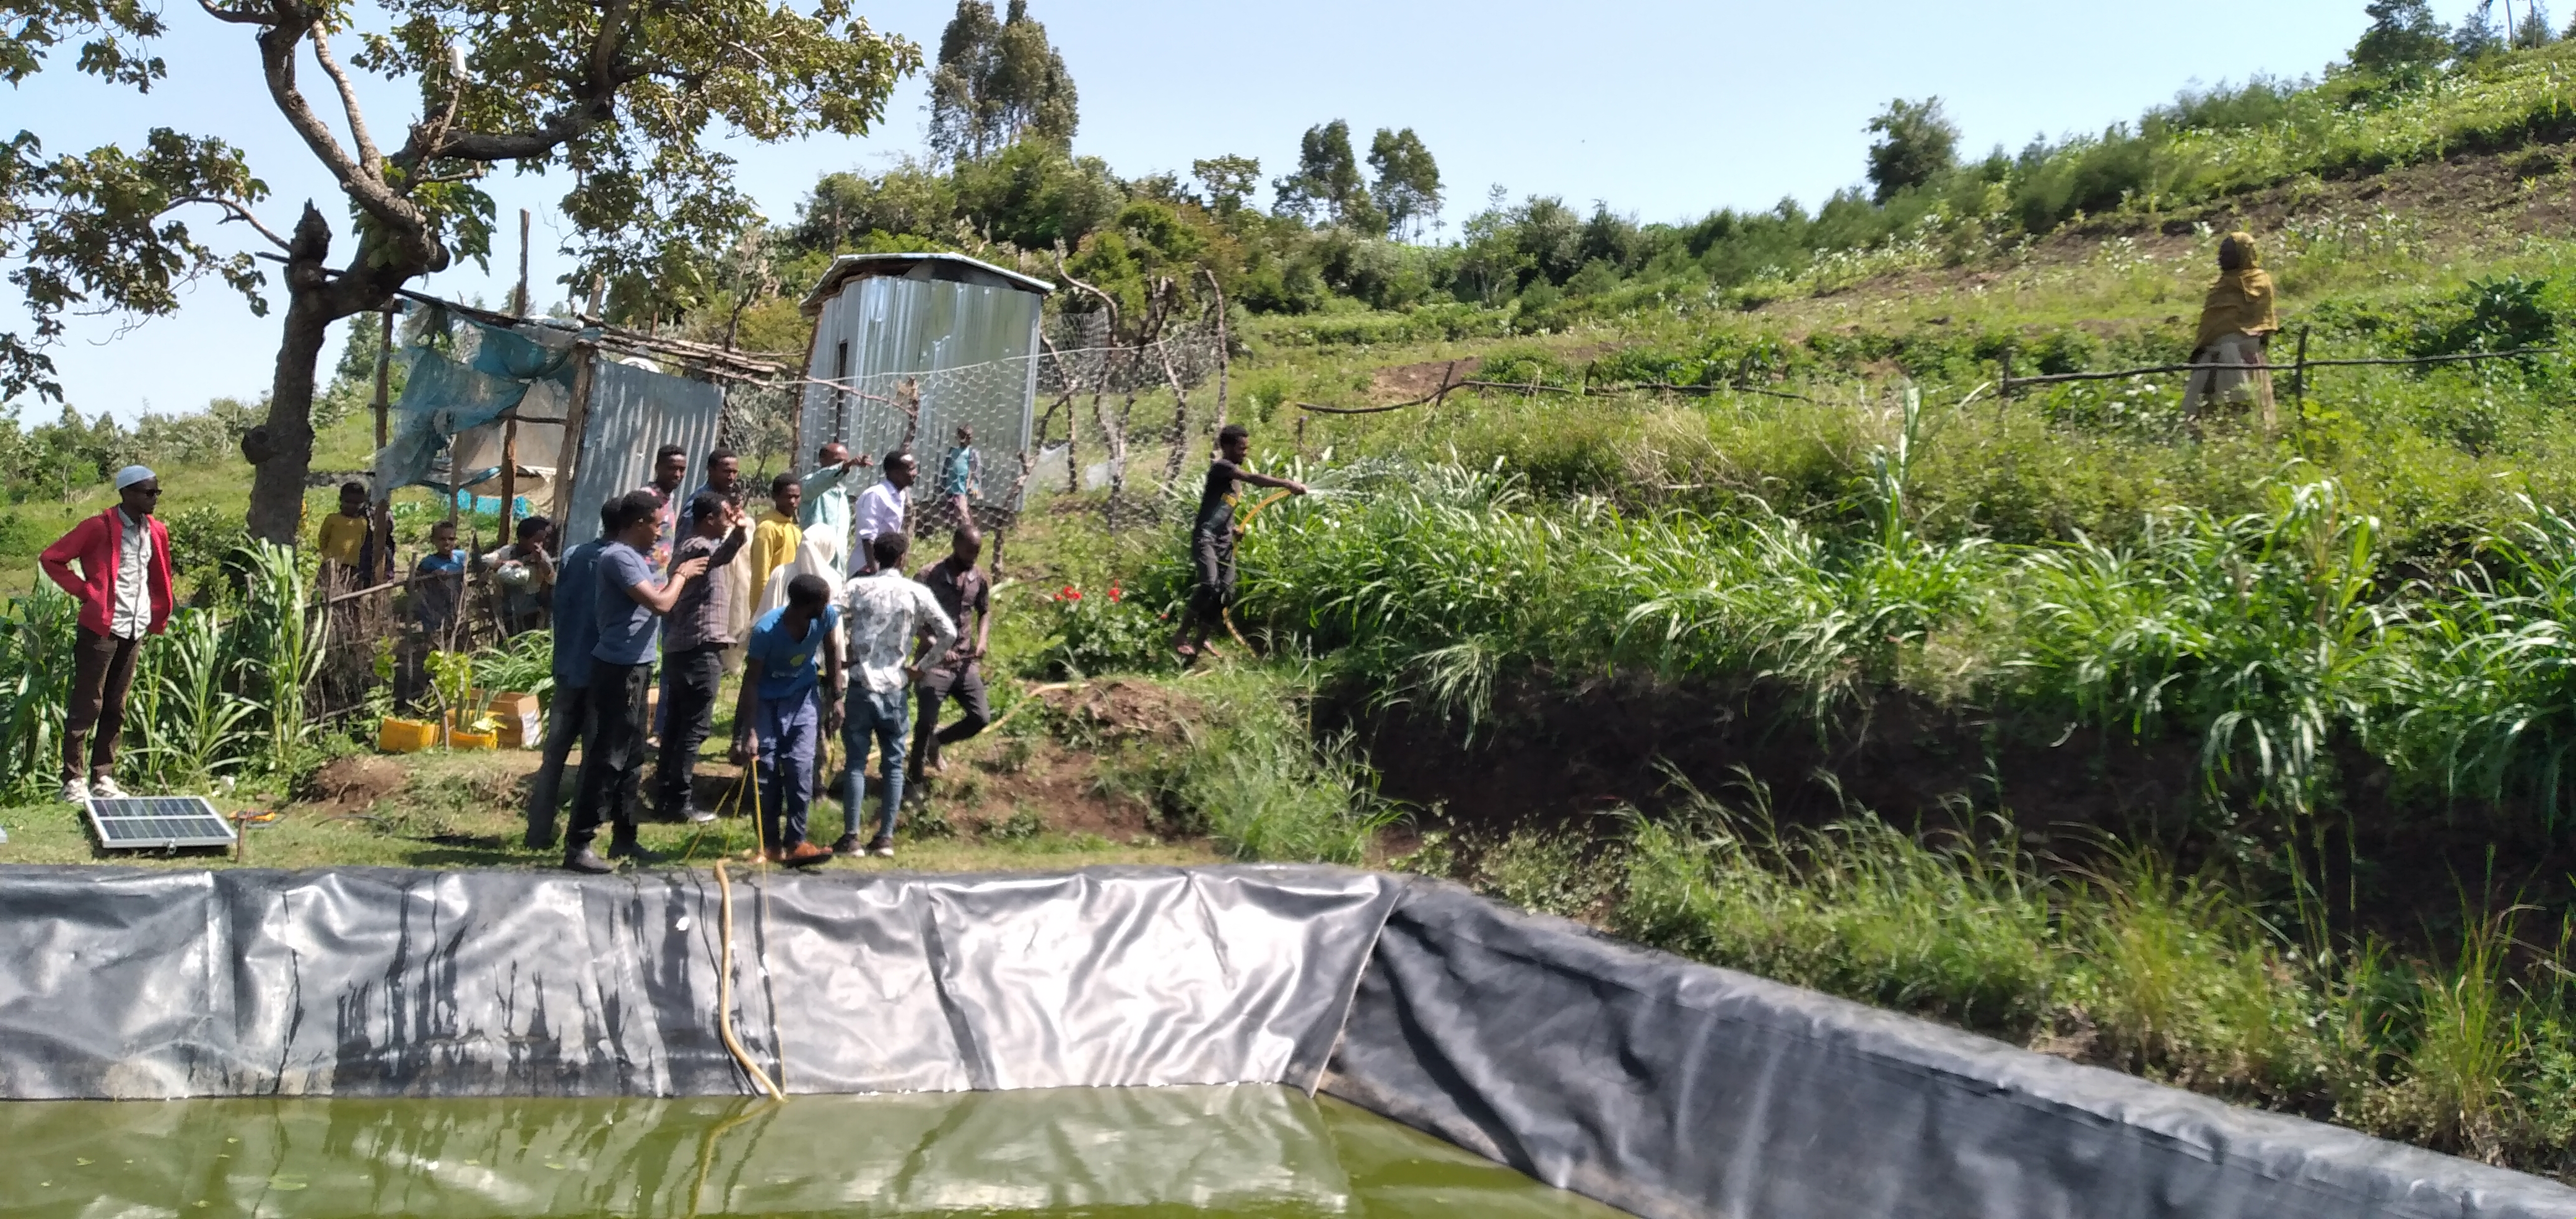 Visiteurs à la ferme d'Aliyi Mohammed. Crédit : Chali Keneni, Coordinateur de Projet pour le district de Doba, Éthiopie.